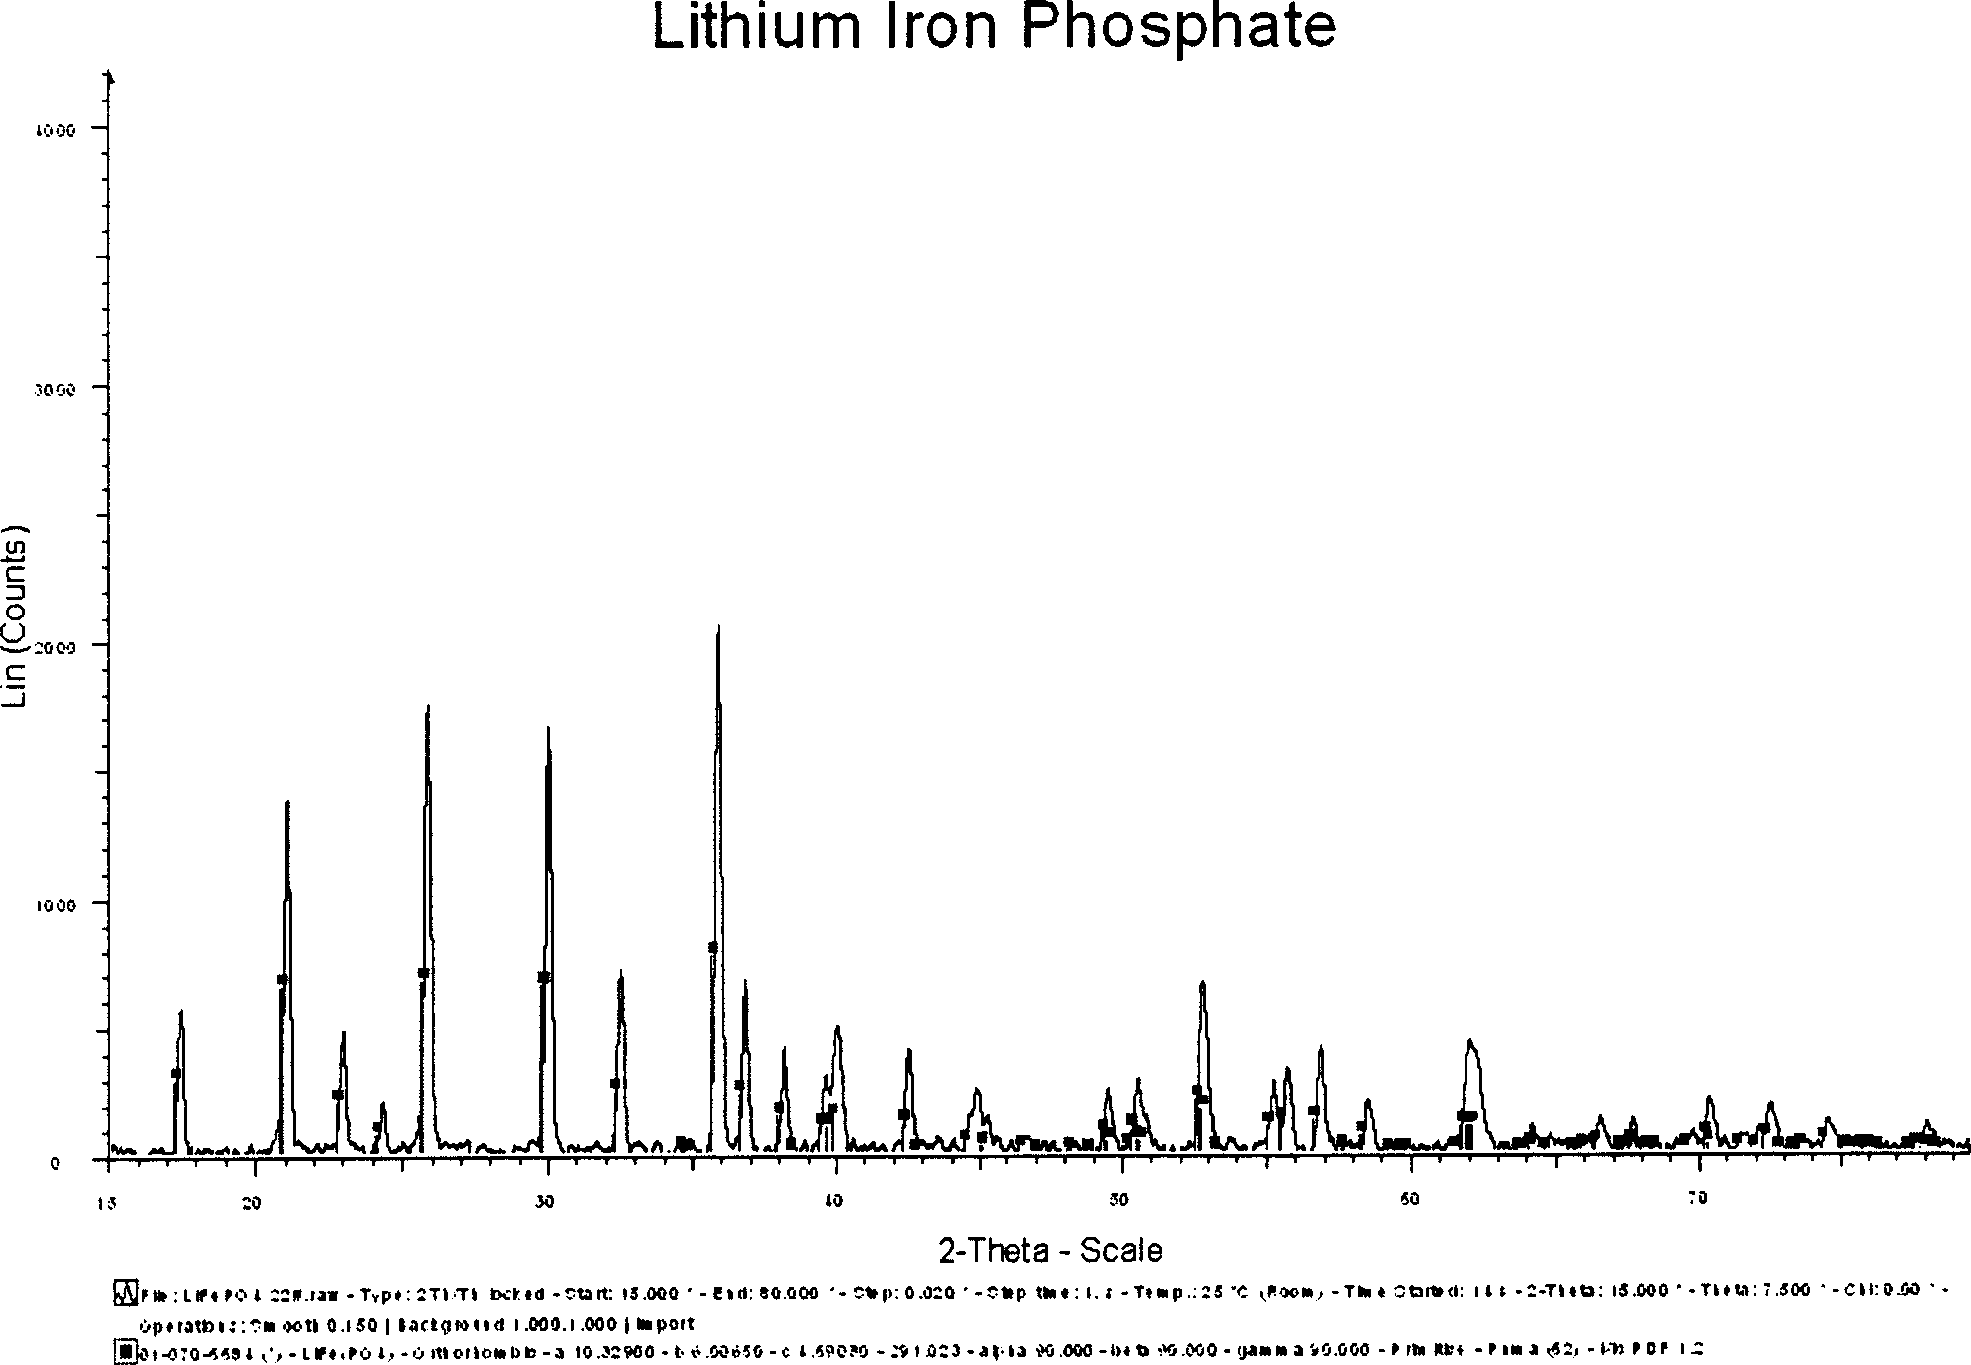 Semiwet method of preparing lithium ferrous phosphate and its prepared lithium ferrous phosphate